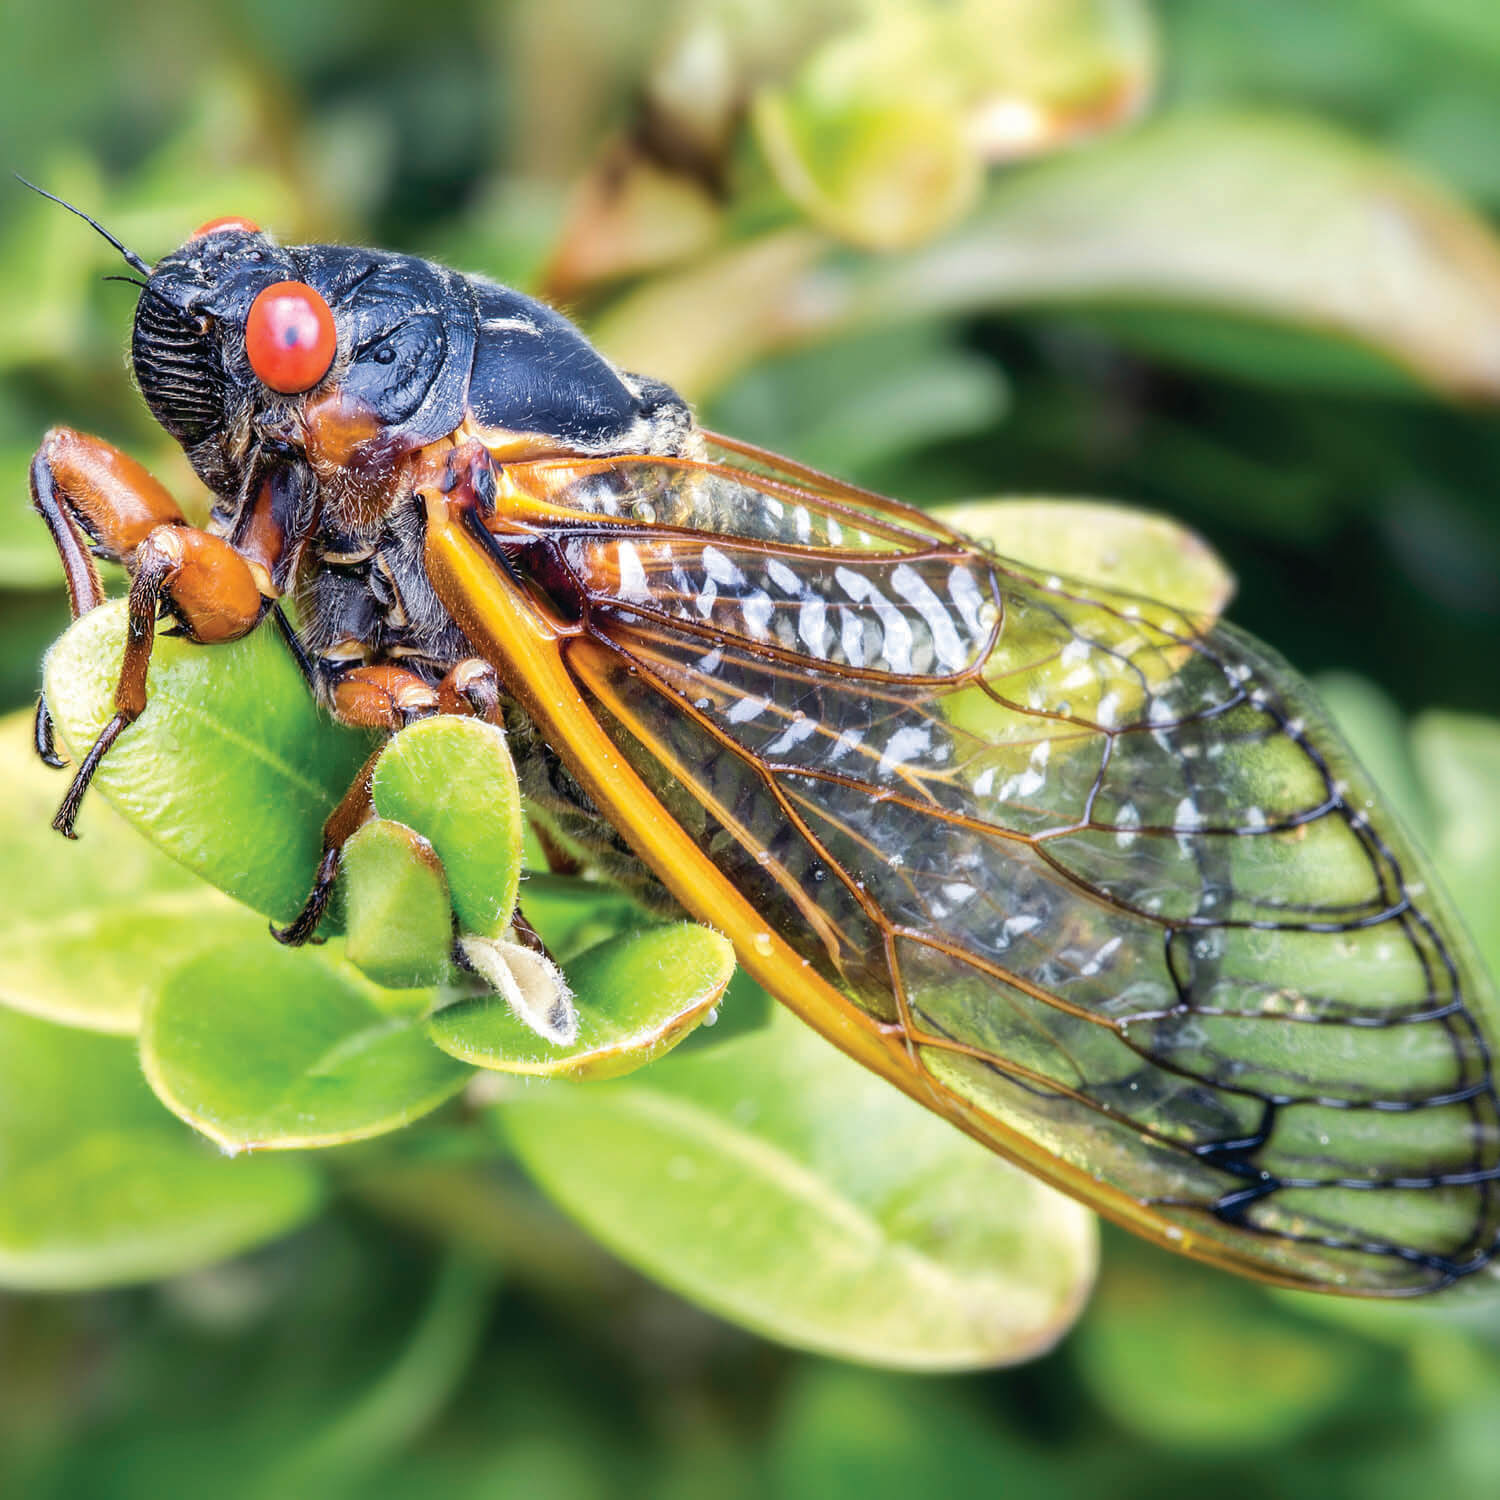 Cicada Season Facts & Myths about the 17 Year Cicada